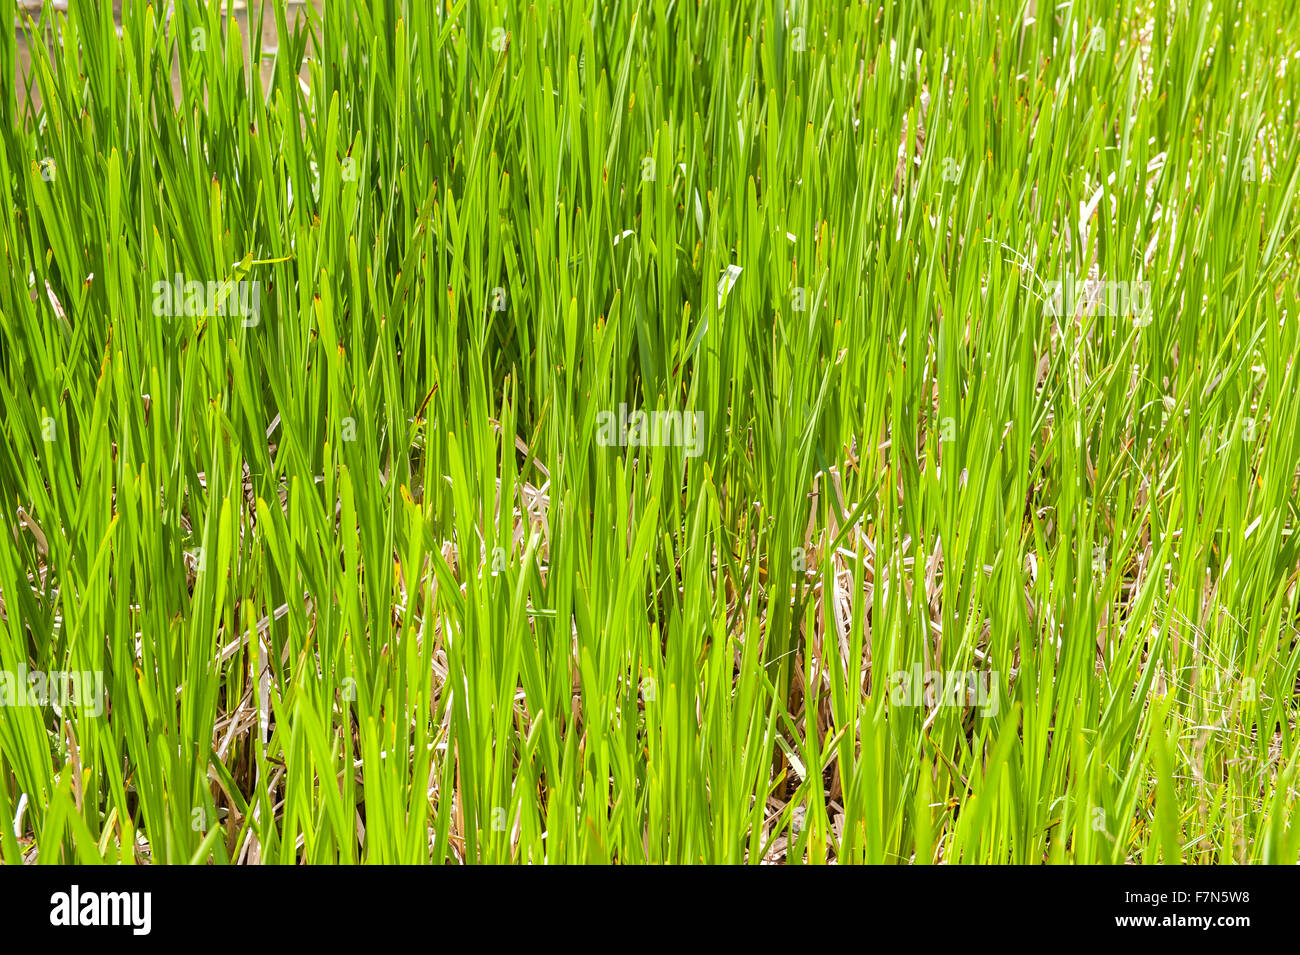 L'herbe verte fraîche dans la zone close up Banque D'Images